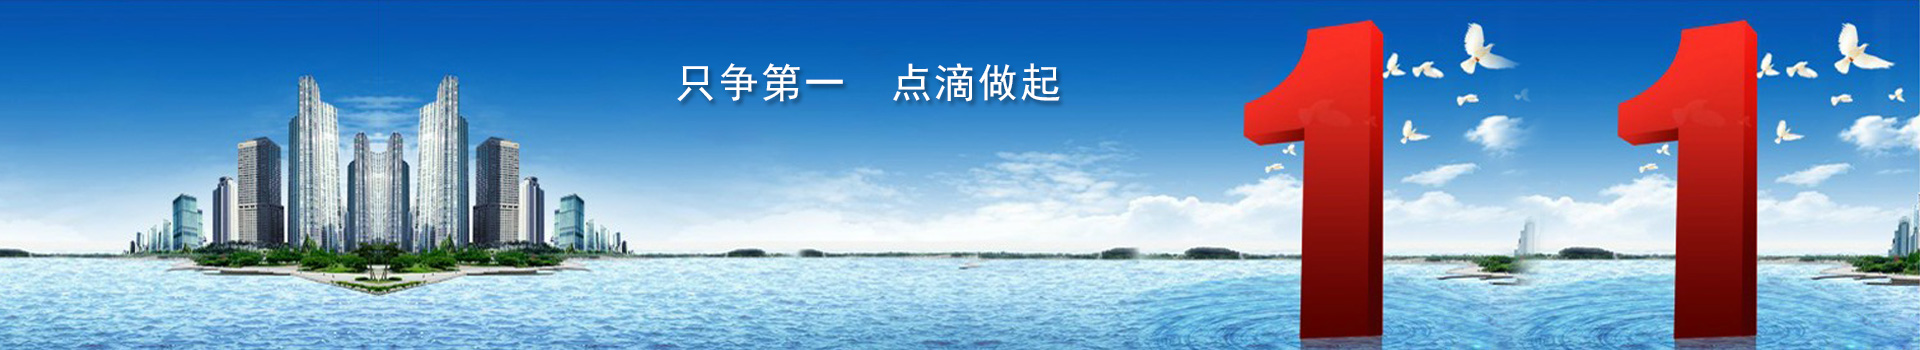 上海新茶资源,上海娱乐网,上海娱乐平台,爱上海同城对对碰